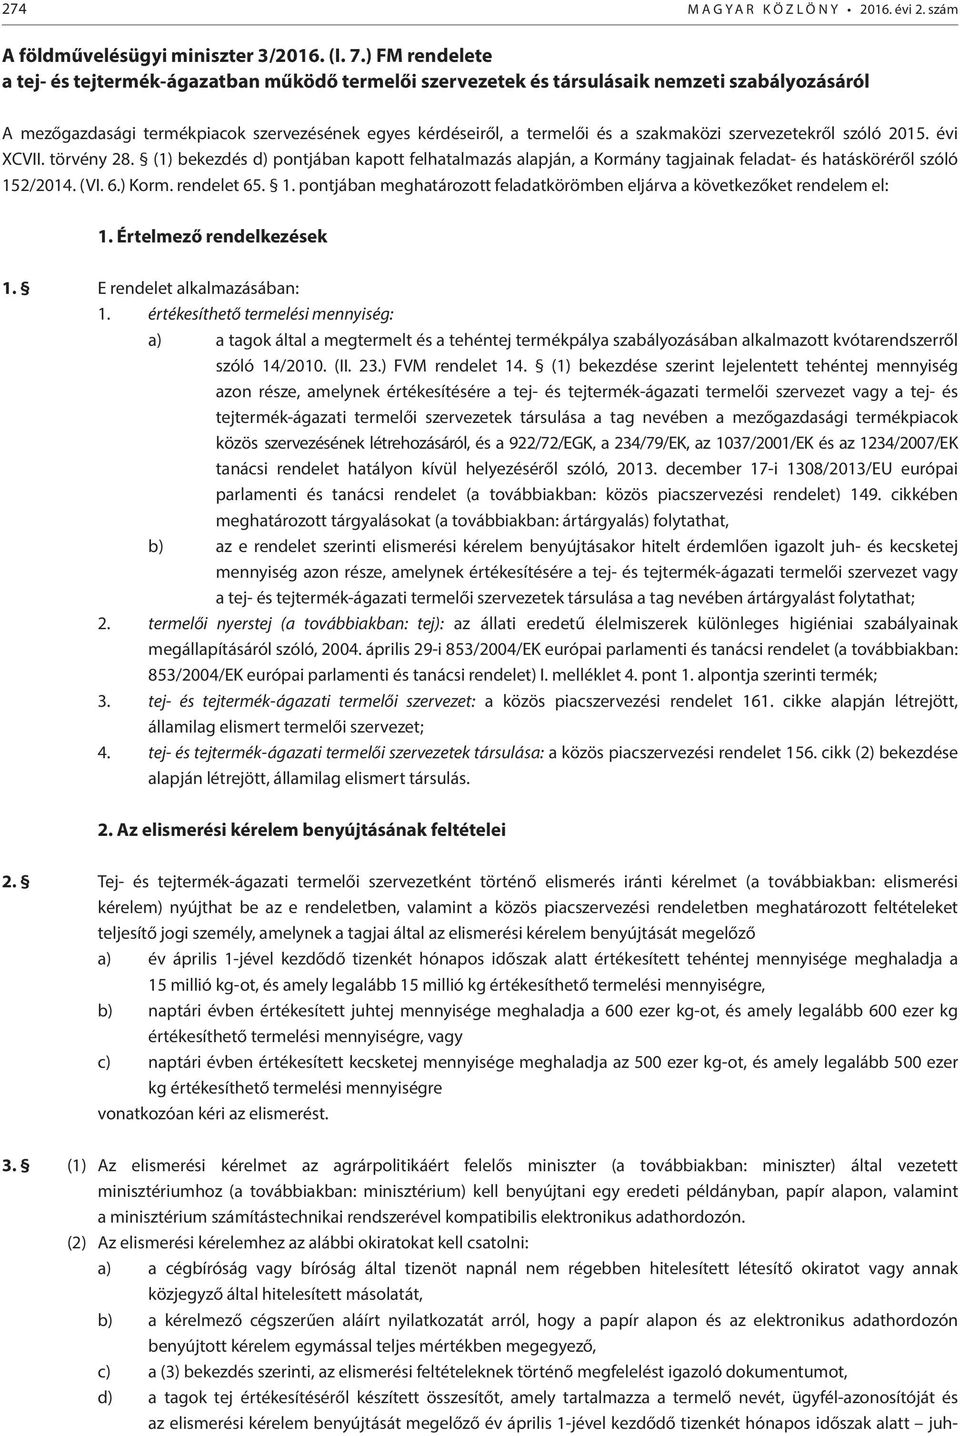 szakmaközi szervezetekről szóló 2015. évi XCVII. törvény 28. (1) bekezdés d) pontjában kapott felhatalmazás alapján, a Kormány tagjainak feladat- és hatásköréről szóló 152/2014. (VI. 6.) Korm.